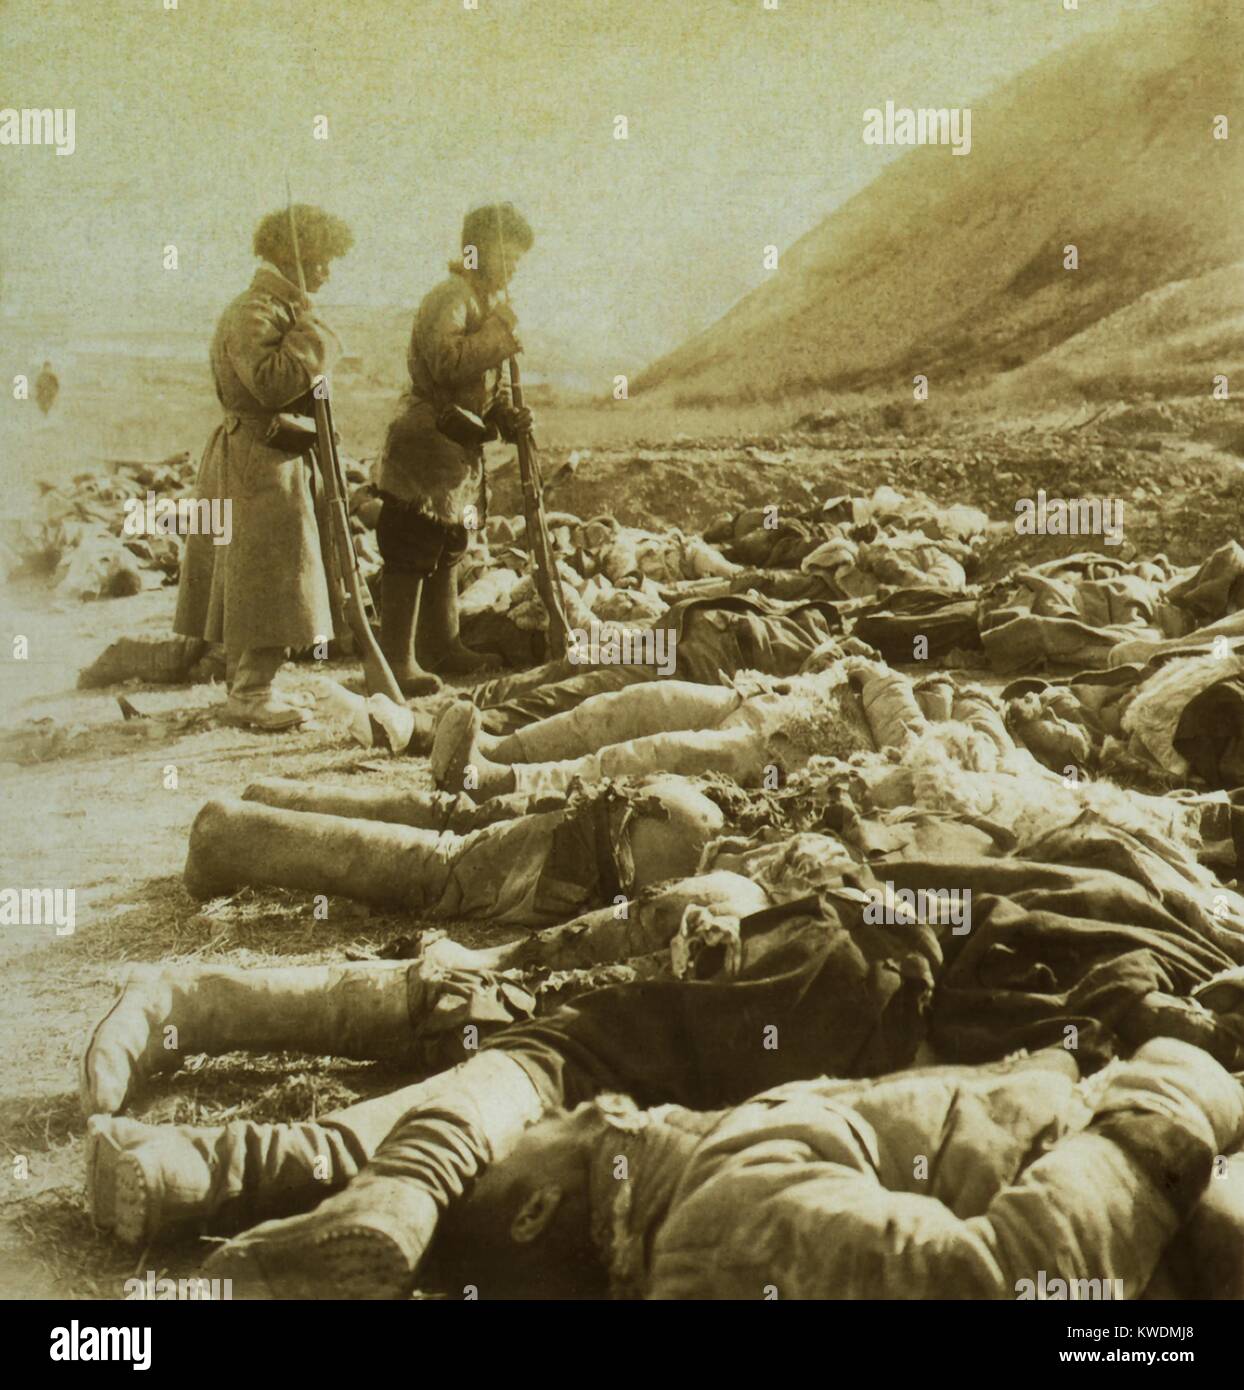 Des soldats russes tués près de 203 mètres de la colline parlementaire au cours de la dernière 2 mois du Siège de Port Arthur. 18 septembre au 5 décembre 1904, durant la guerre russo-japonaise (1904-1905 BSLOC   2017 18 101) Banque D'Images